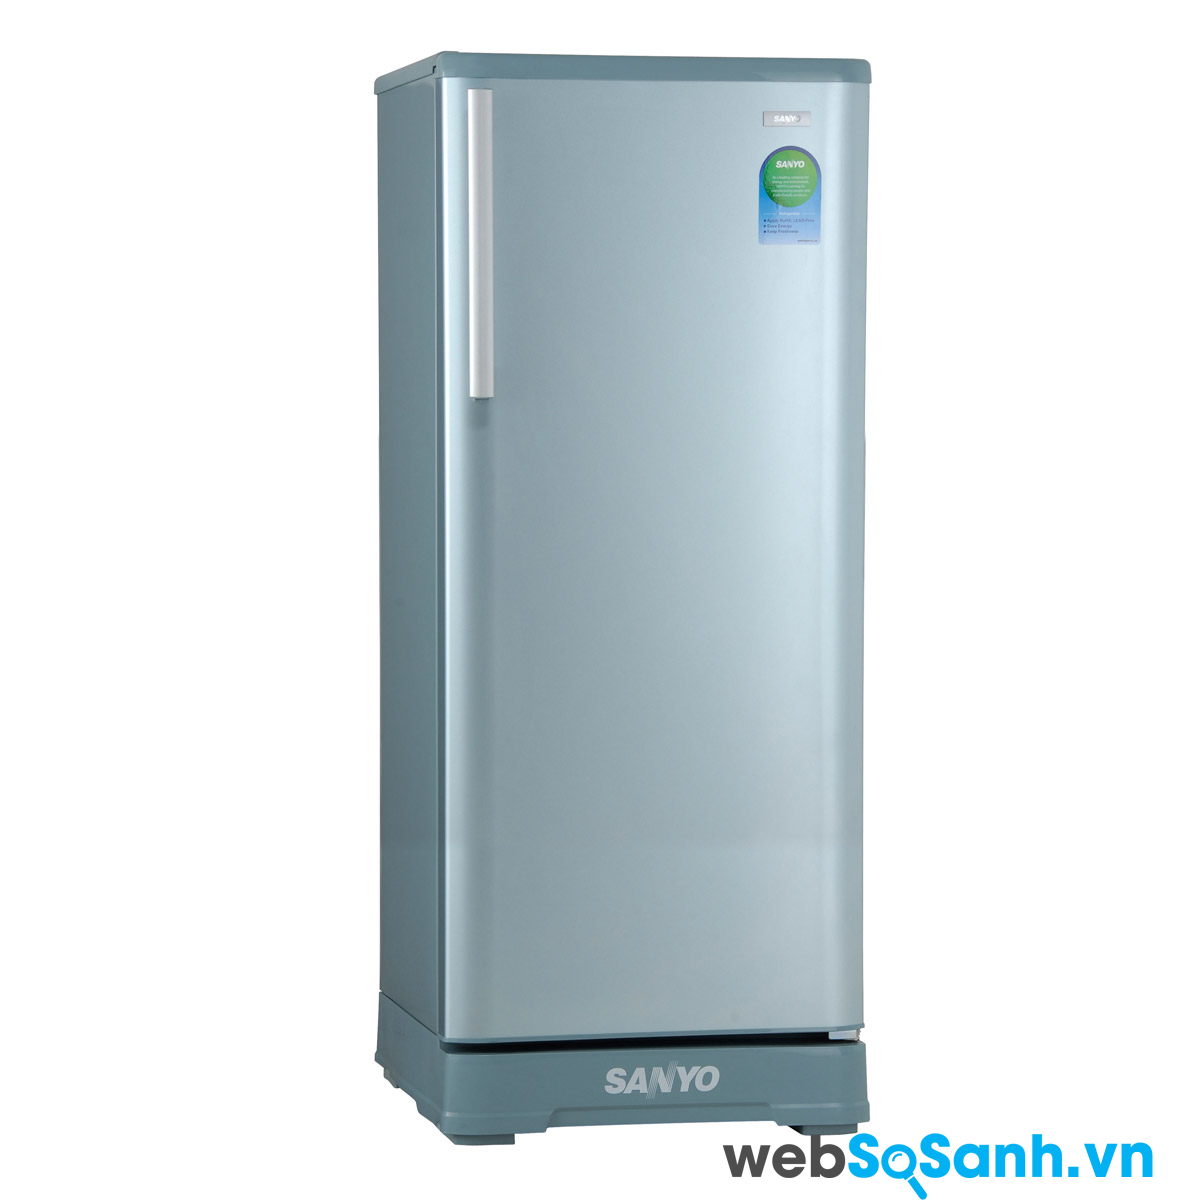 Tủ lạnh Sanyo được nhiều người tiêu dùng Việt Nam ưa thích sử dụng